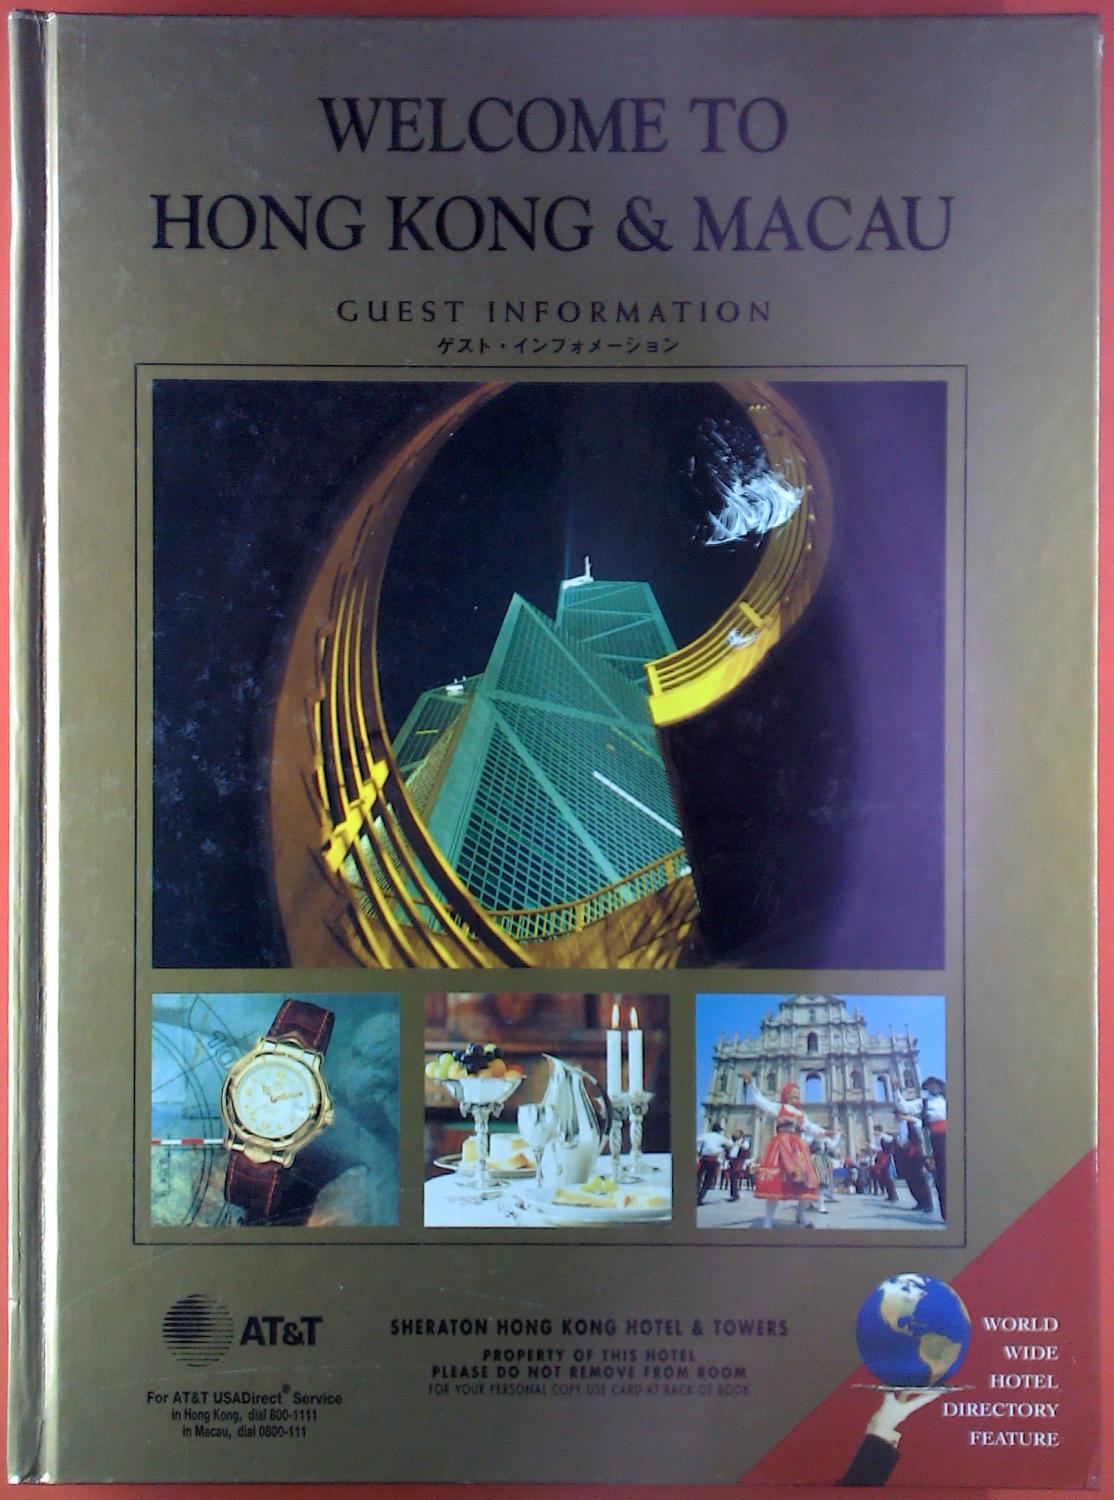 Welcome to Hong Kong & Macau. Guest Information. - Sheraton Hong Kong Hotel & Towers